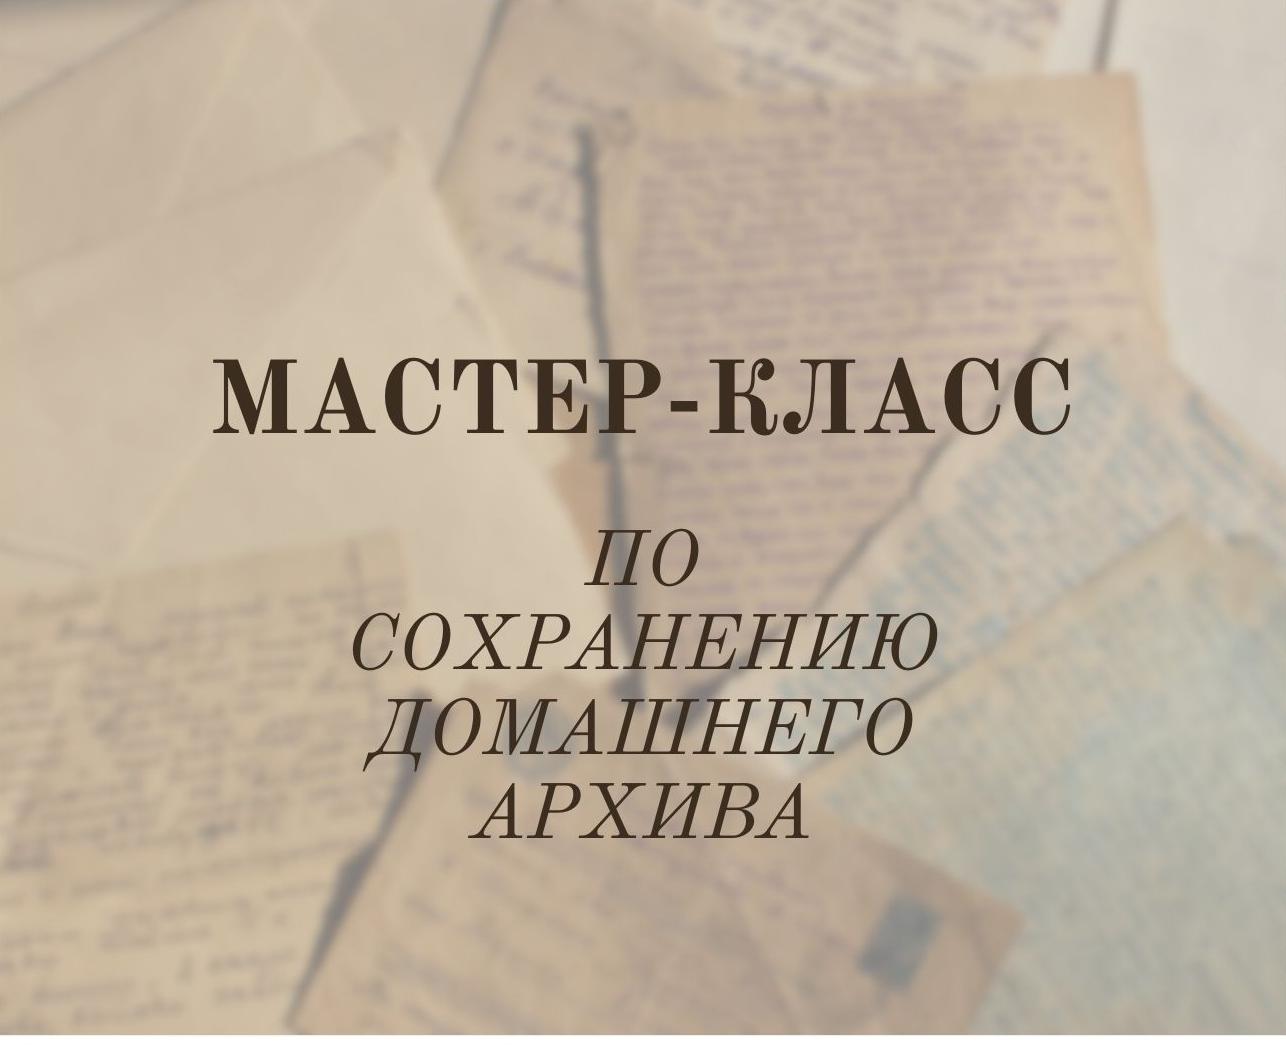 Национальный архив Хакасии подготовил  «Мастер-класс по сохранению домашнего архива»